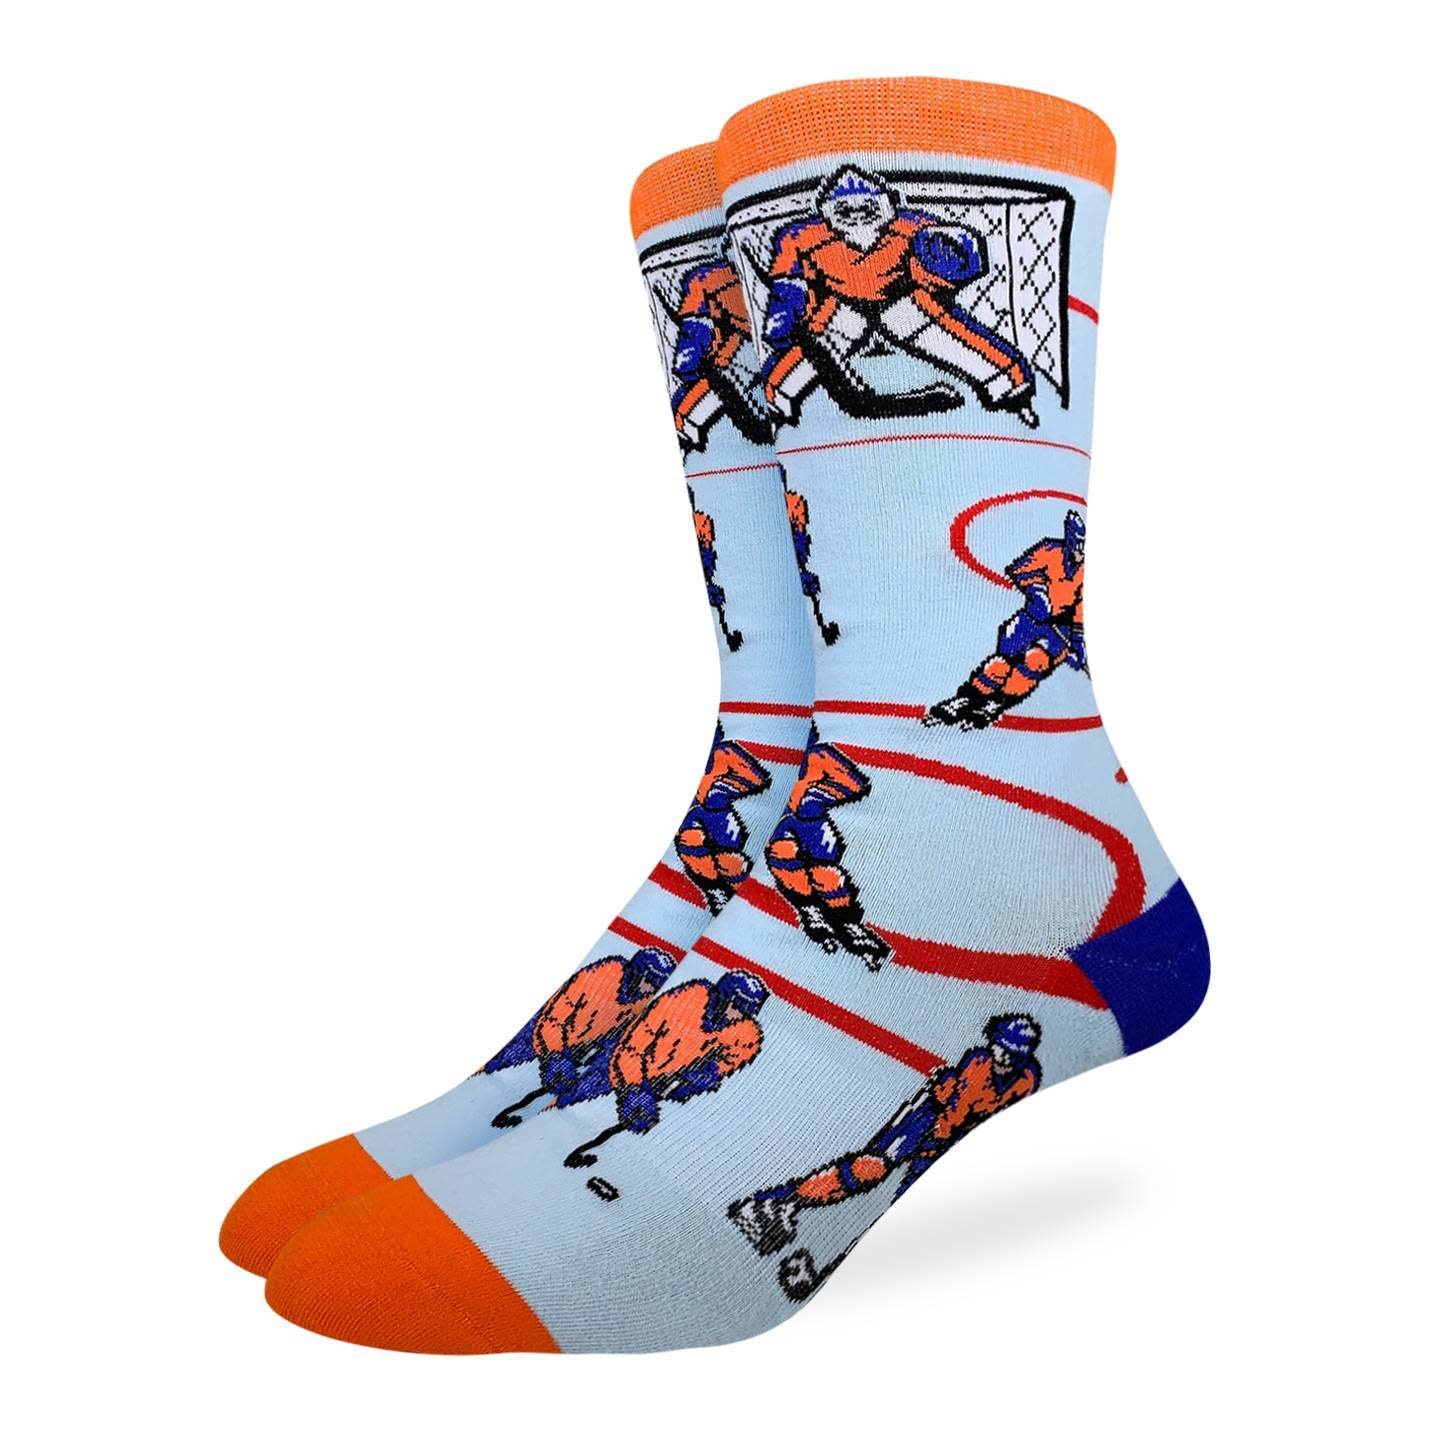 Good Luck Sock Men's Hockey, Orange and Blue Socks